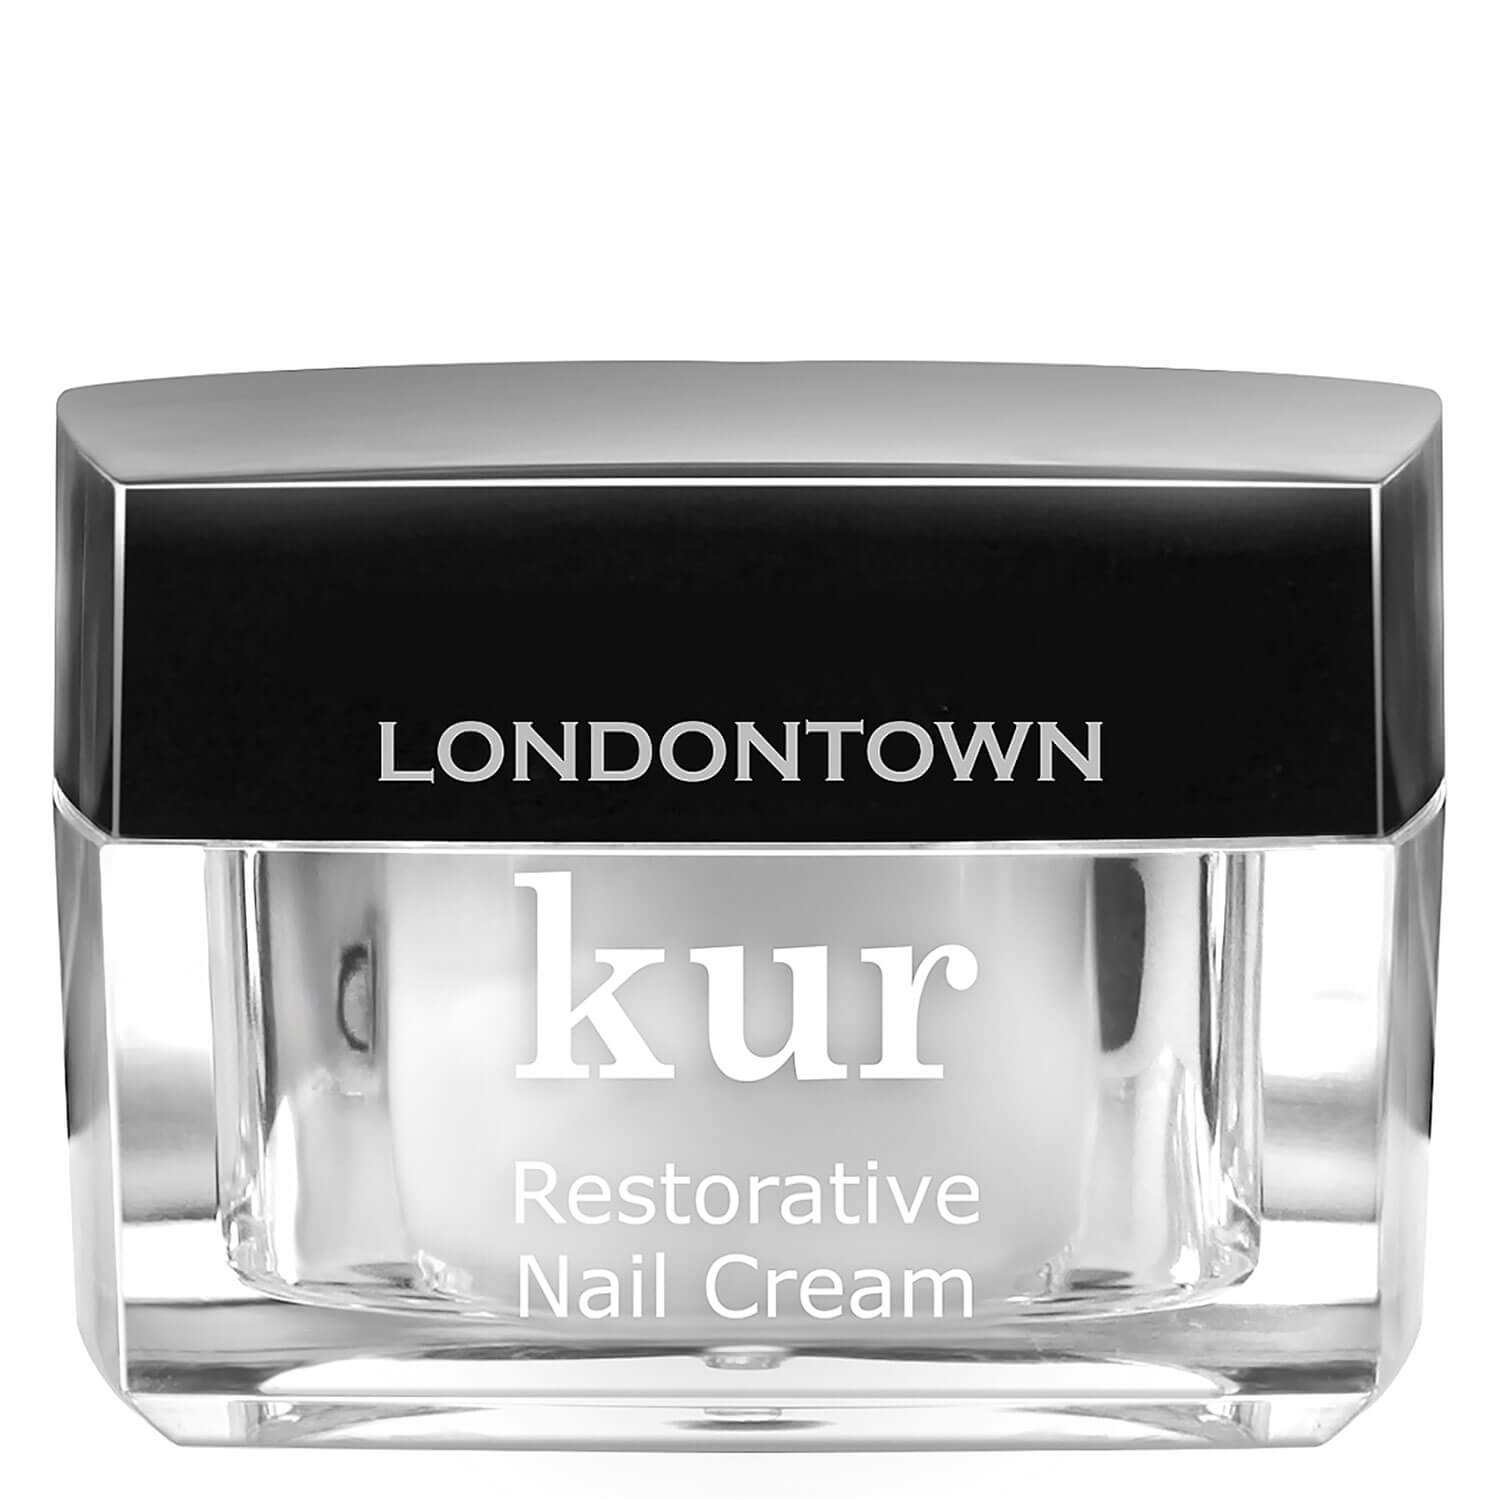 Produktbild von kur - Restorative Nail Cream